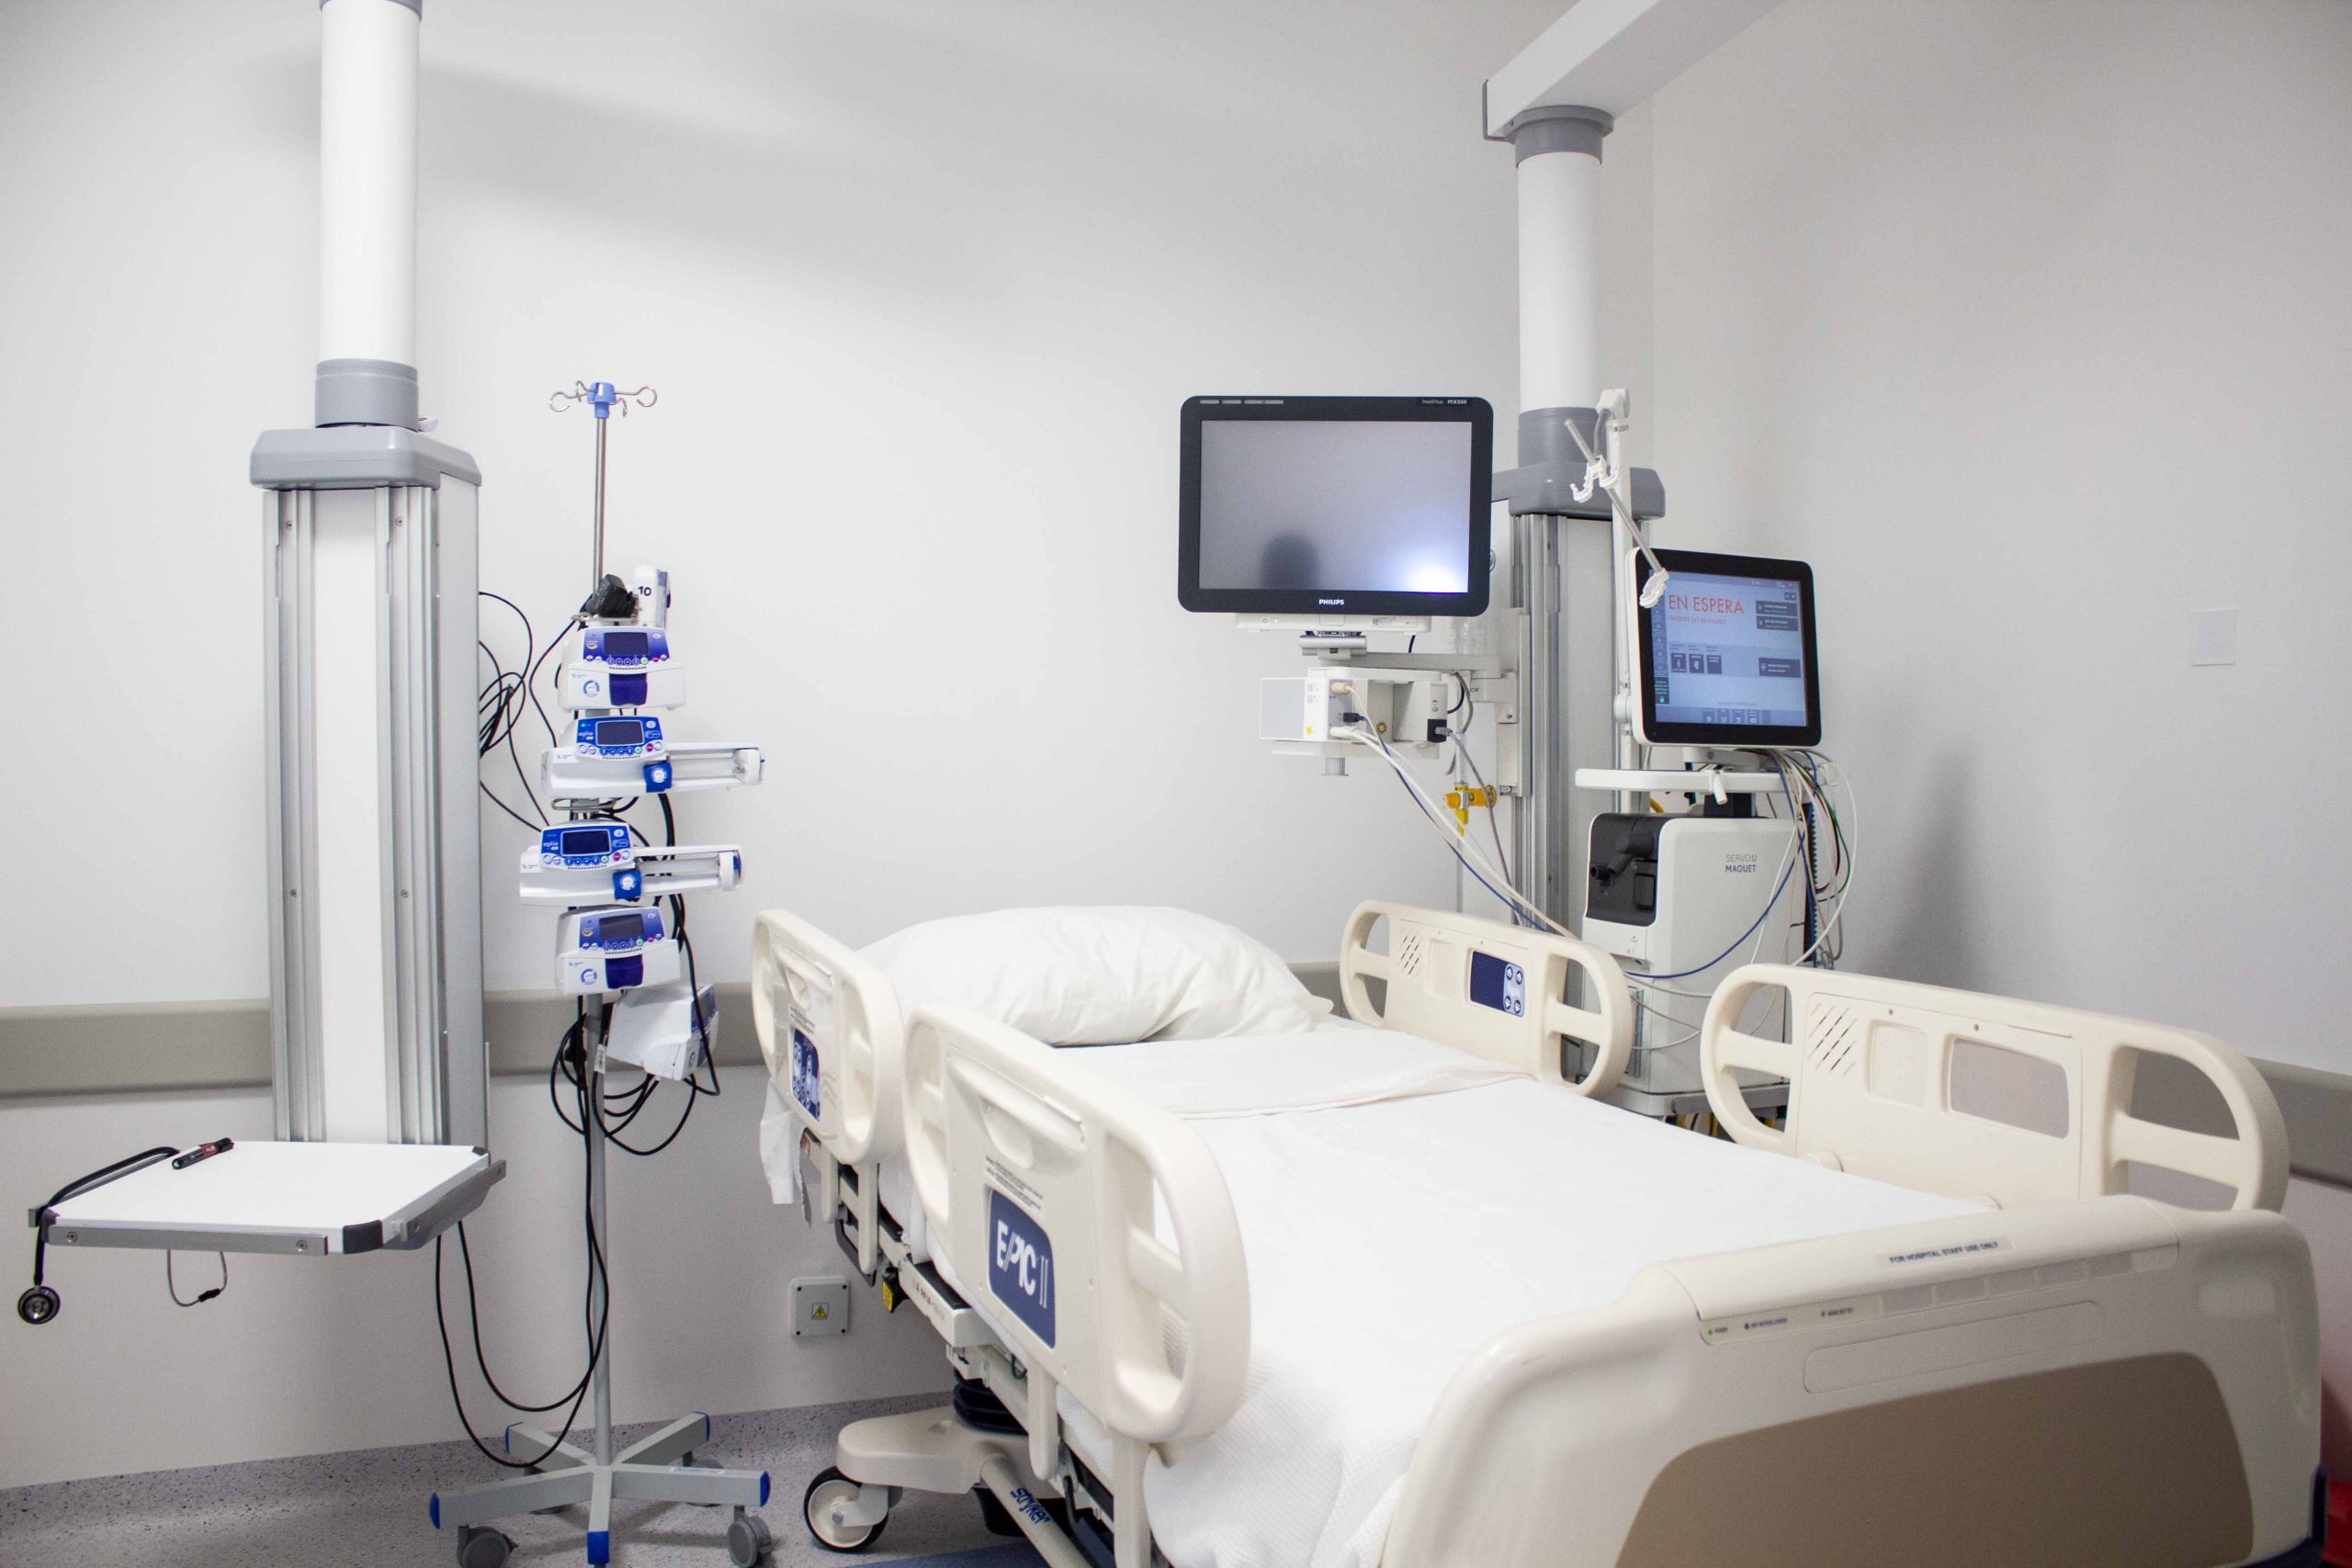 Jerarquía y equipamiento de última tecnología: la Terapia Intensiva del Hospital “Ramón Carrillo” por dentro